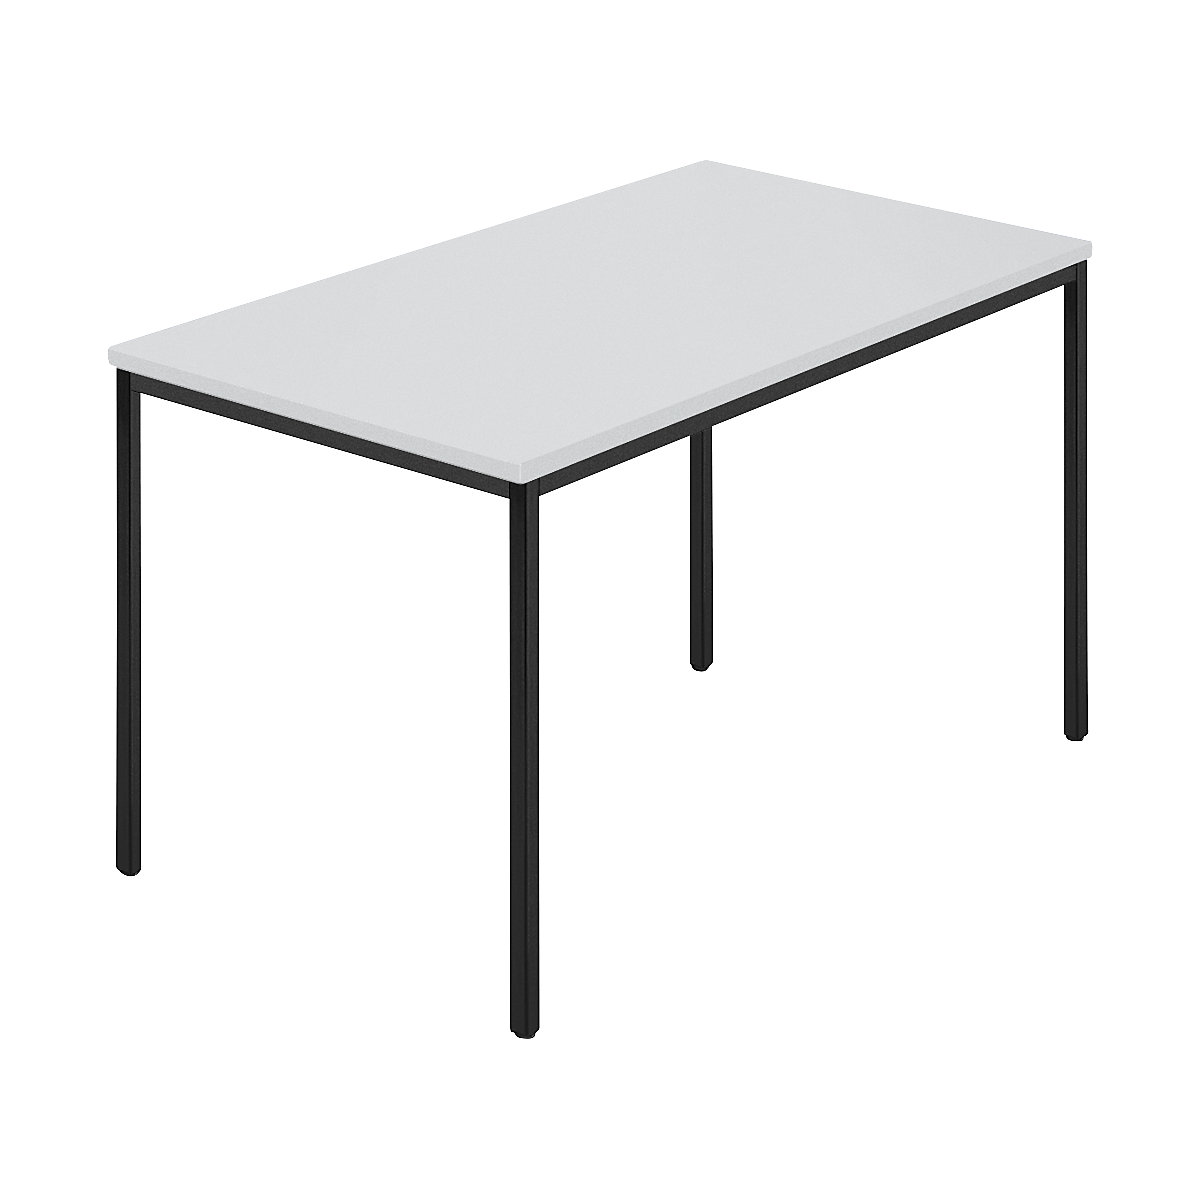 Pravokutni stol, presvučena četverokutna cijev, ŠxD 1200 x 800 mm, u sivoj / antracit boji-4